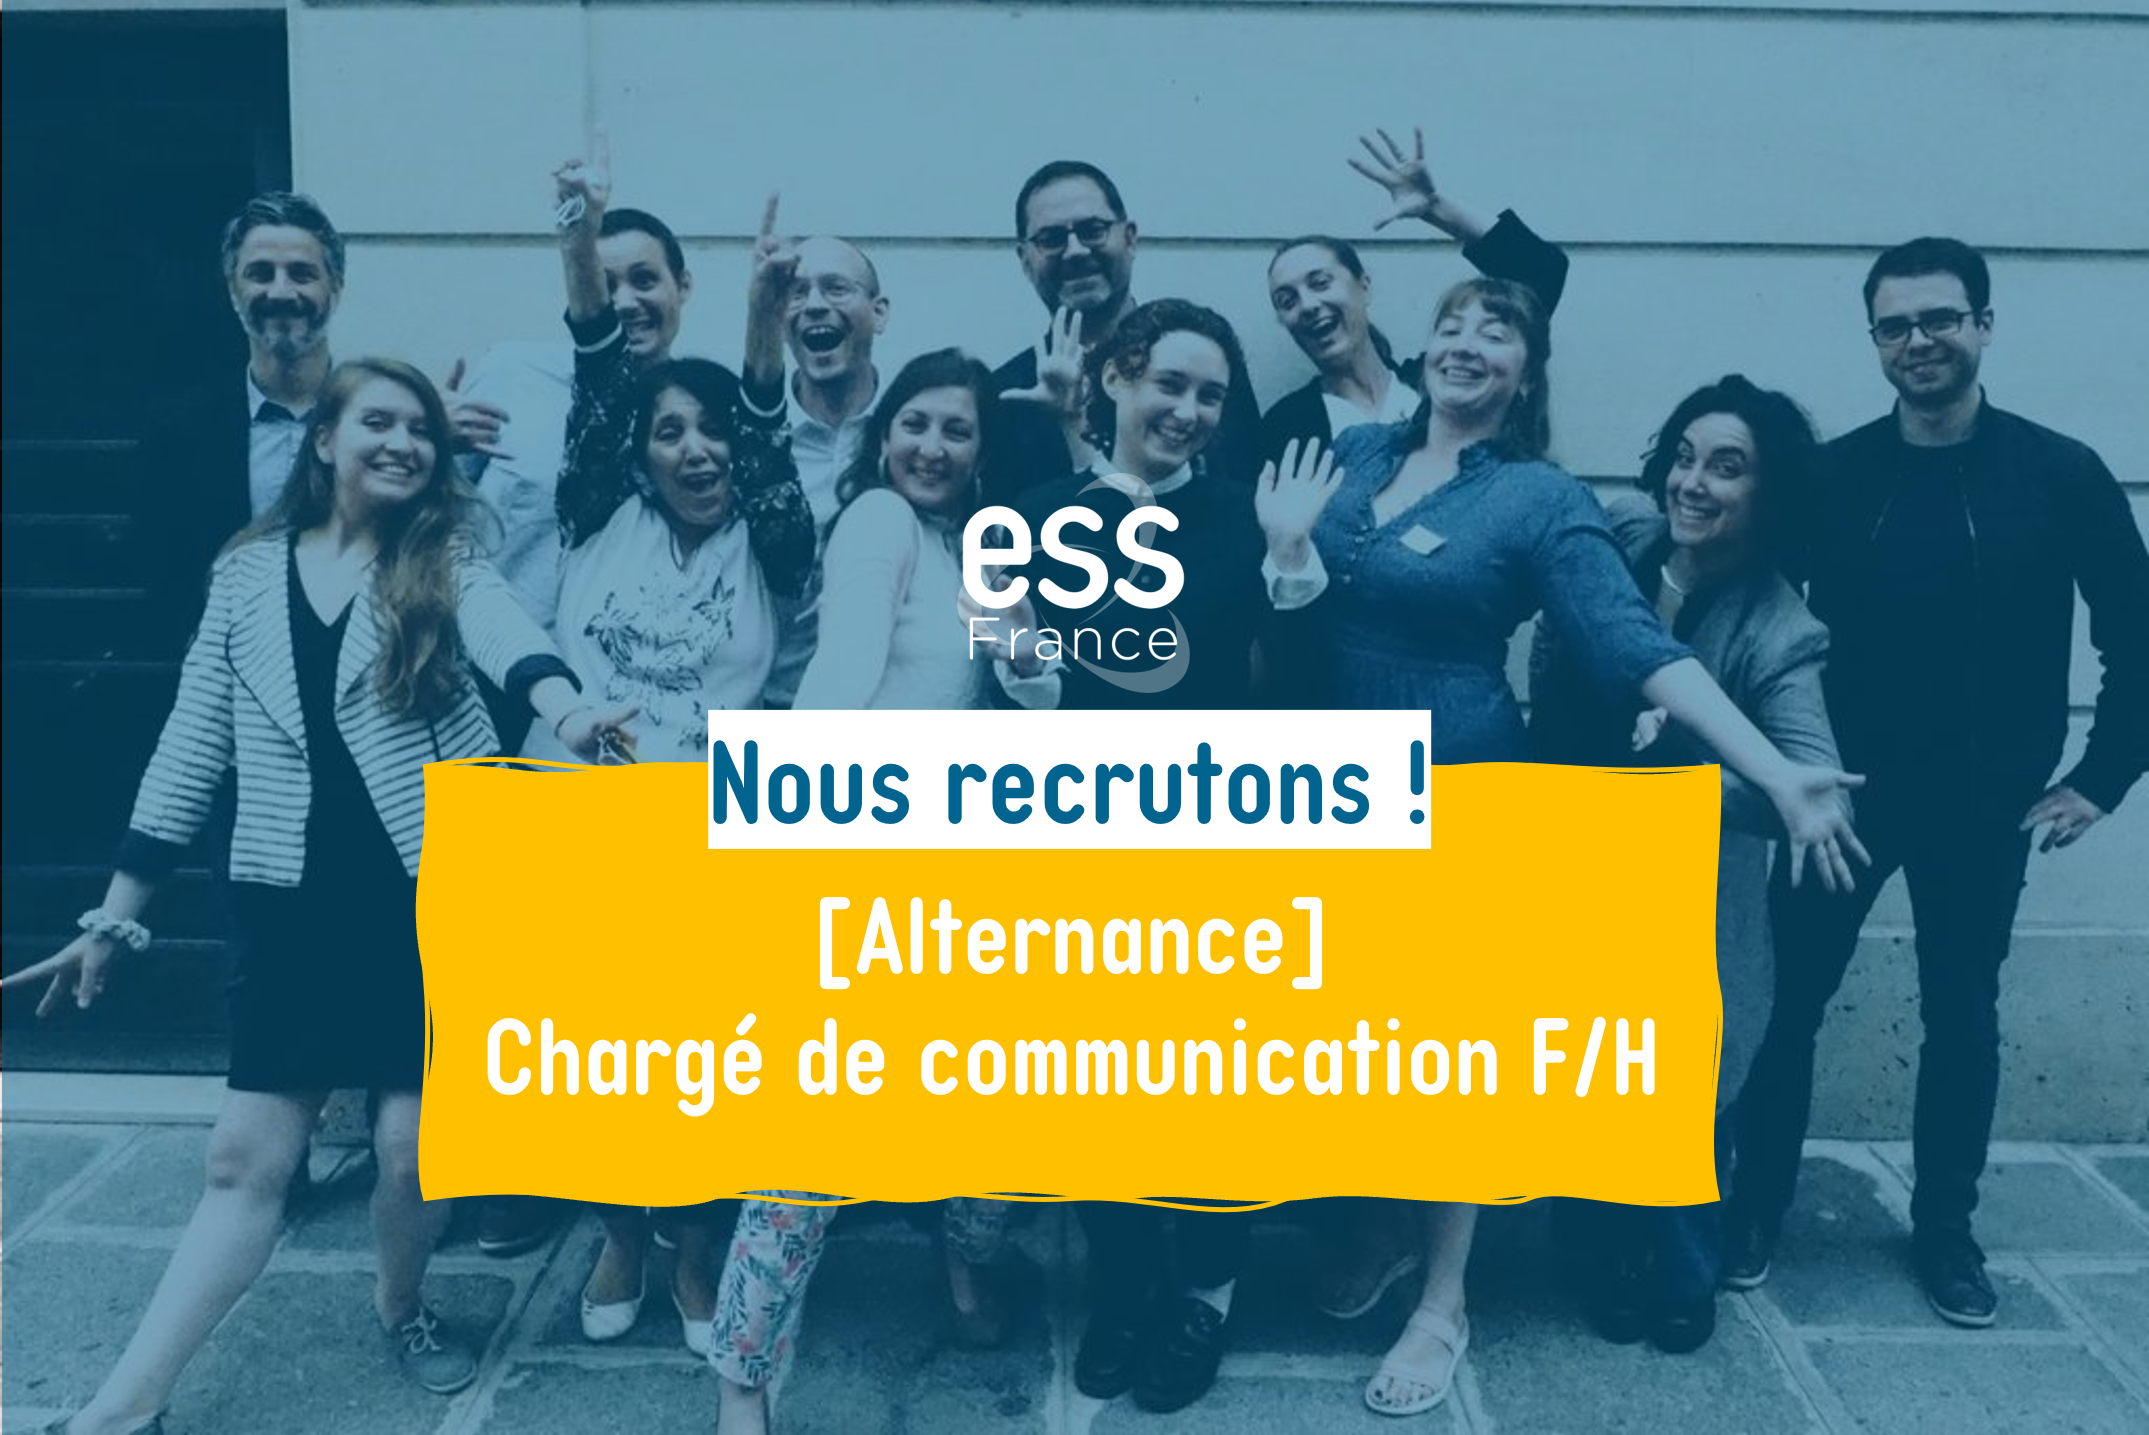 ESS France recrute en alternance : chargé de communication F/H